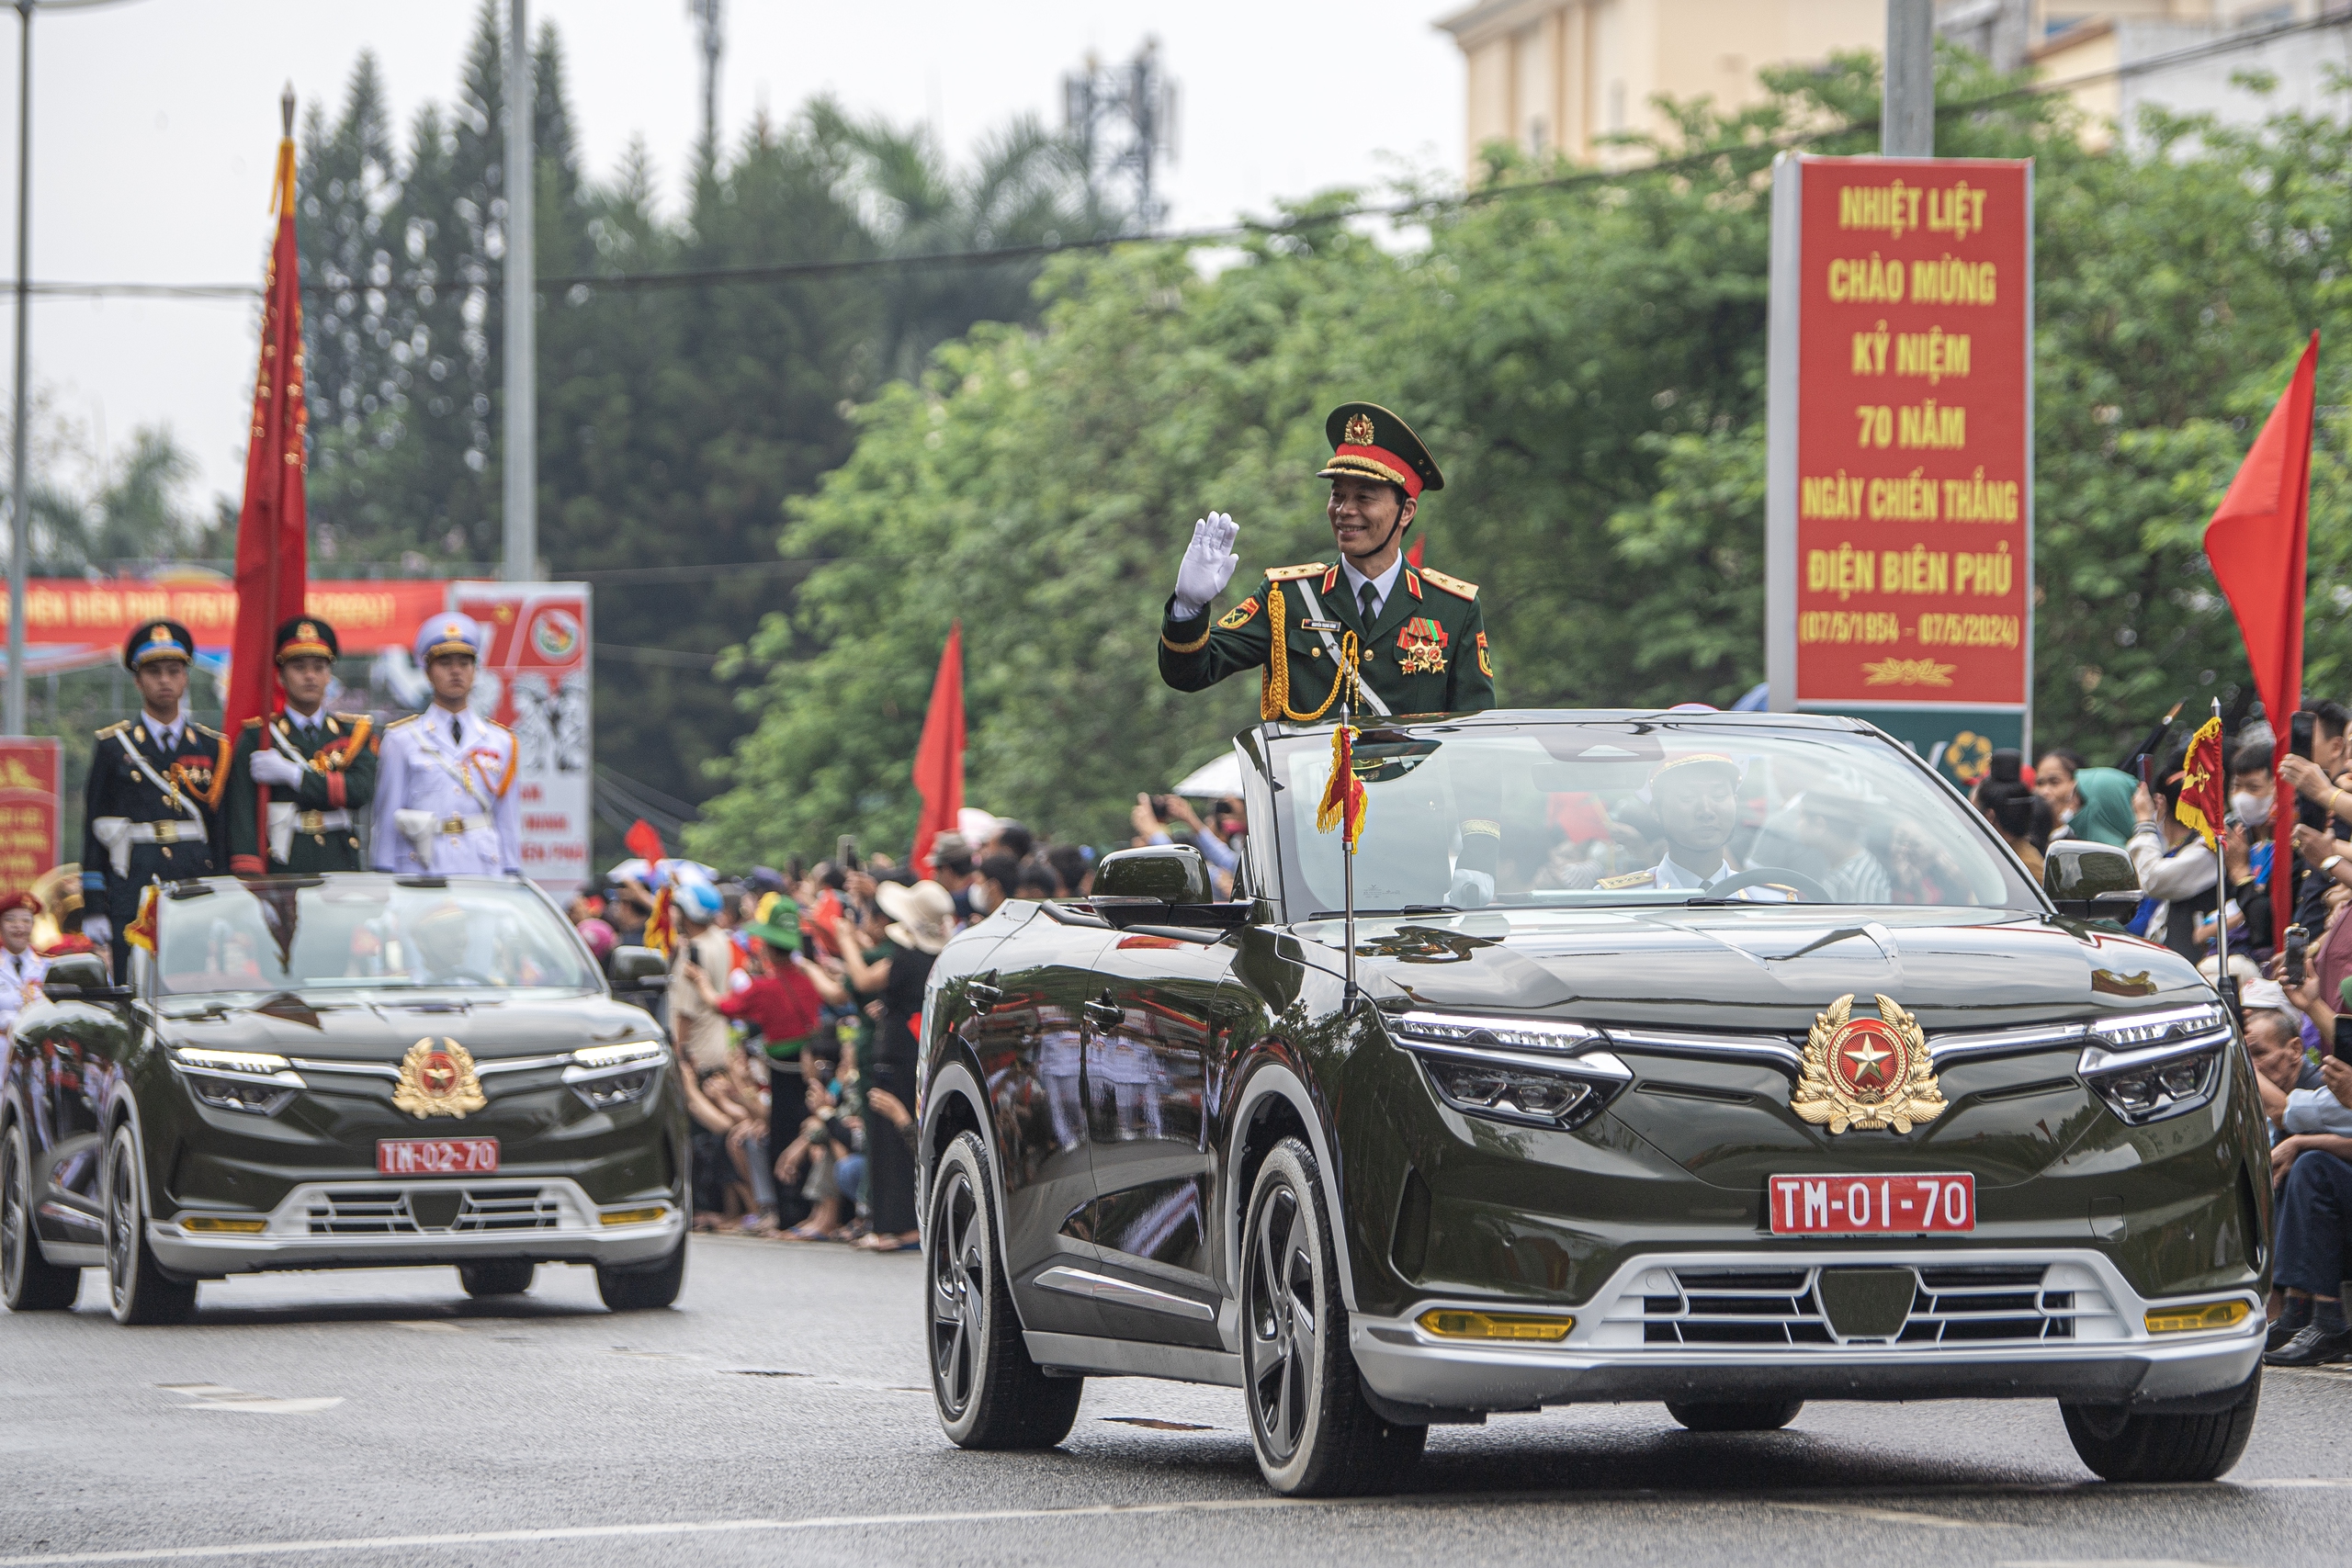 VF 8 mui trần tại lễ diễu binh chào mừng chiến thắng Điện Biên Phủ được thiết kế đặc biệt- Ảnh 7.